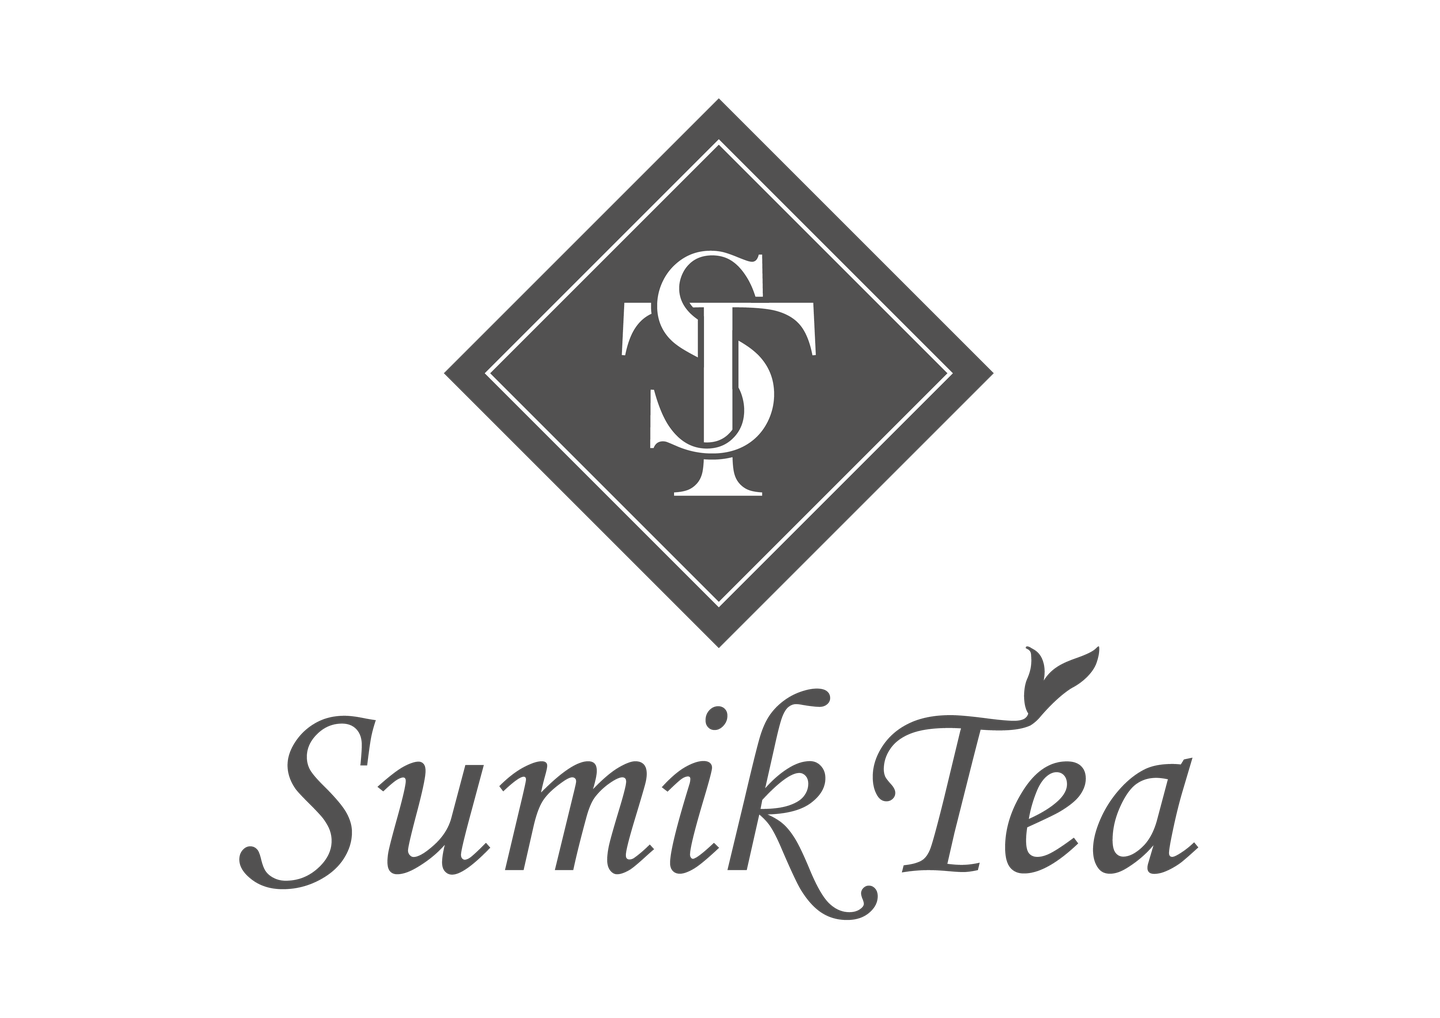 Sumik_Tea_logo_1